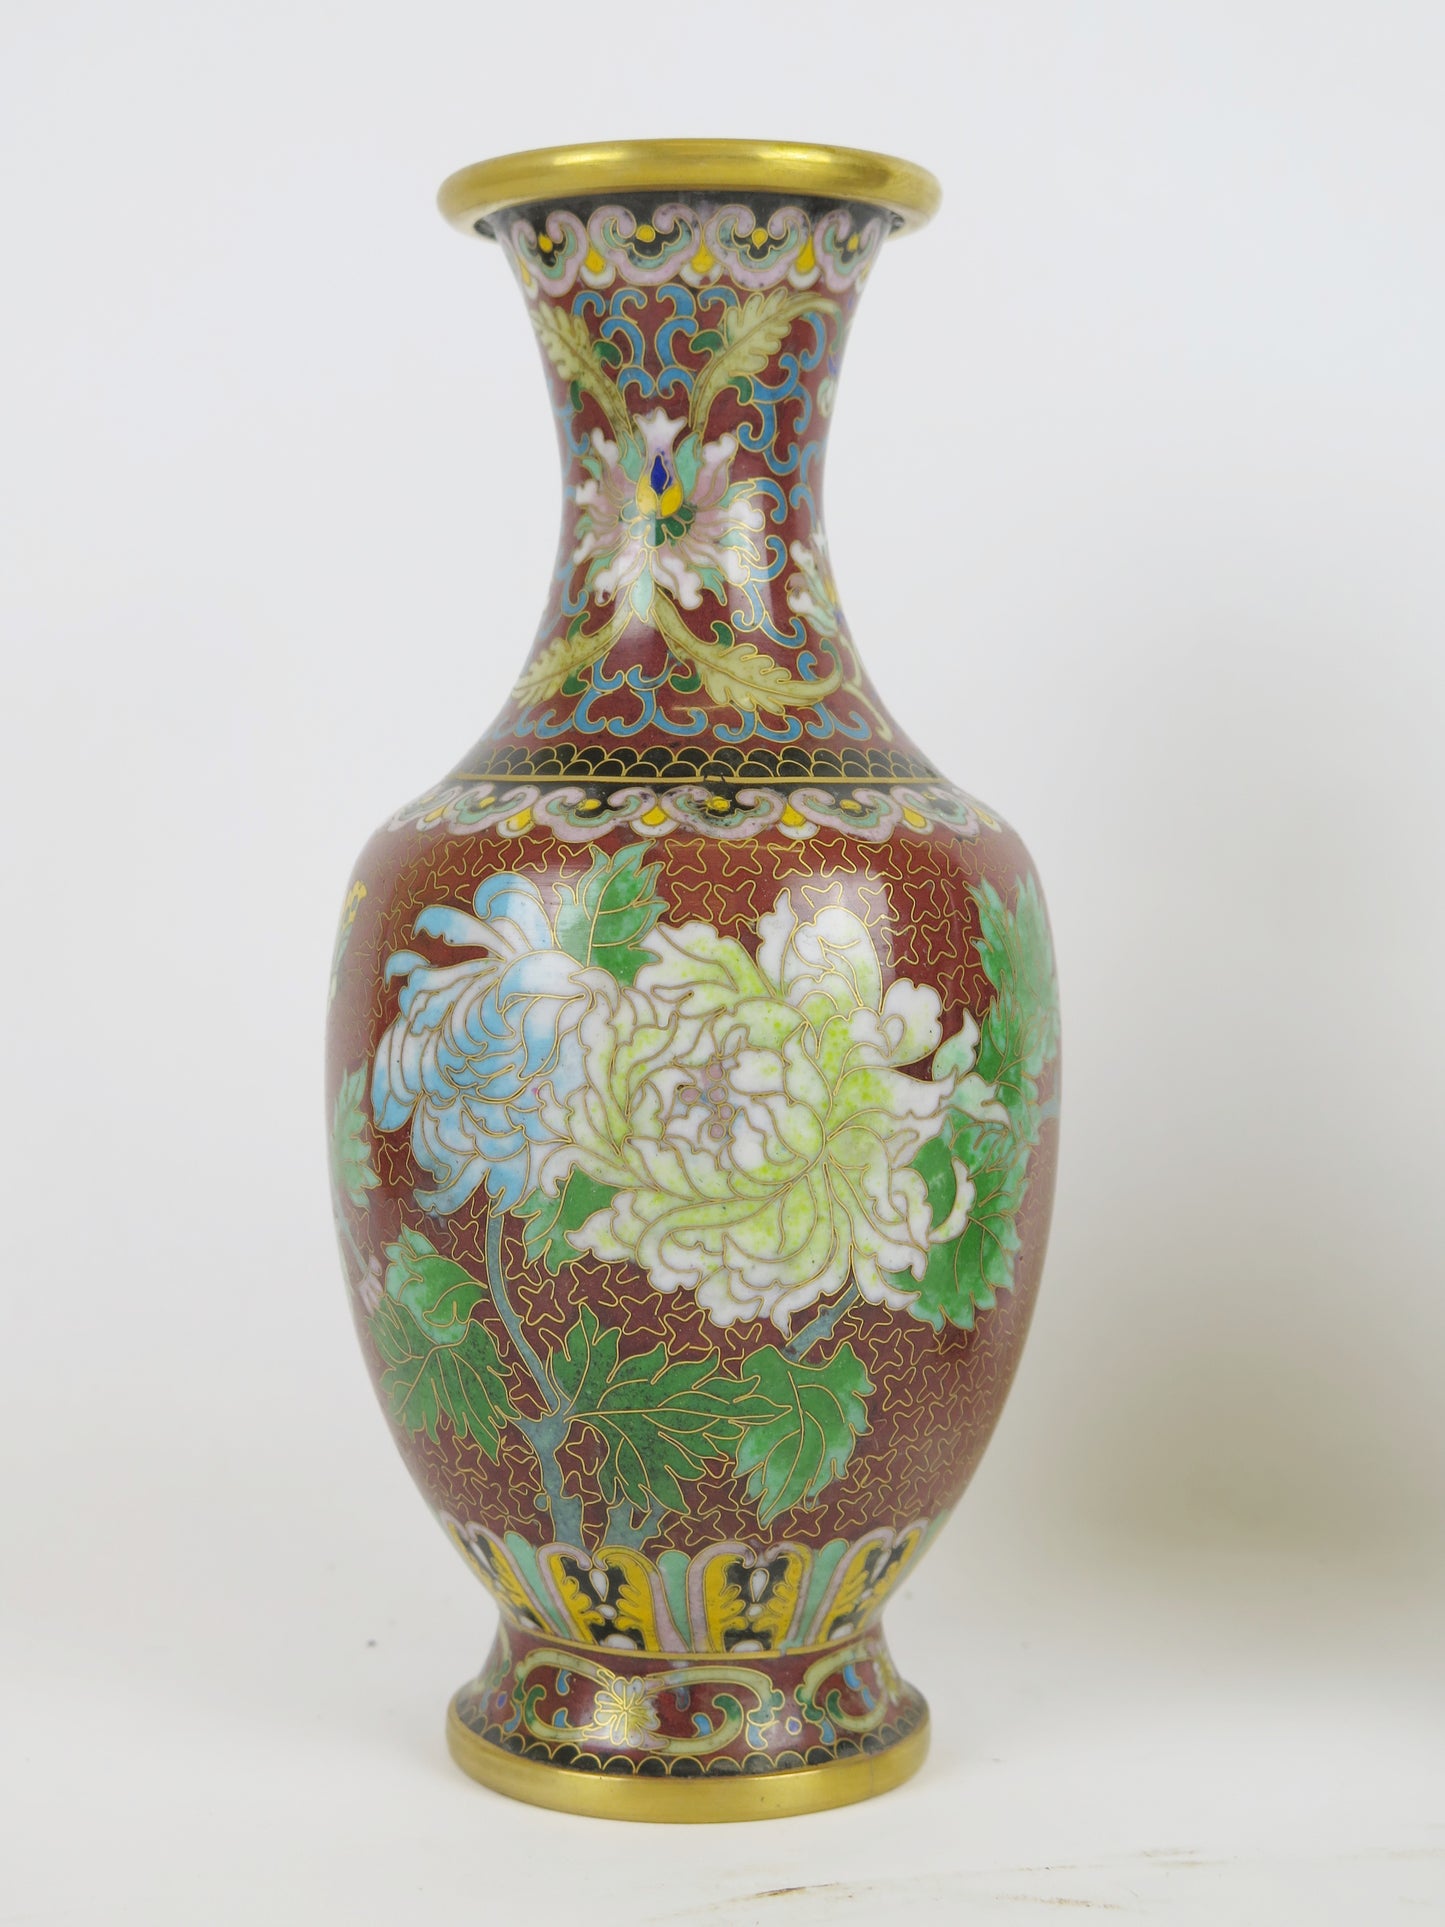 Pair of vintage cloisonné vases China Asia floral flower vase CM1